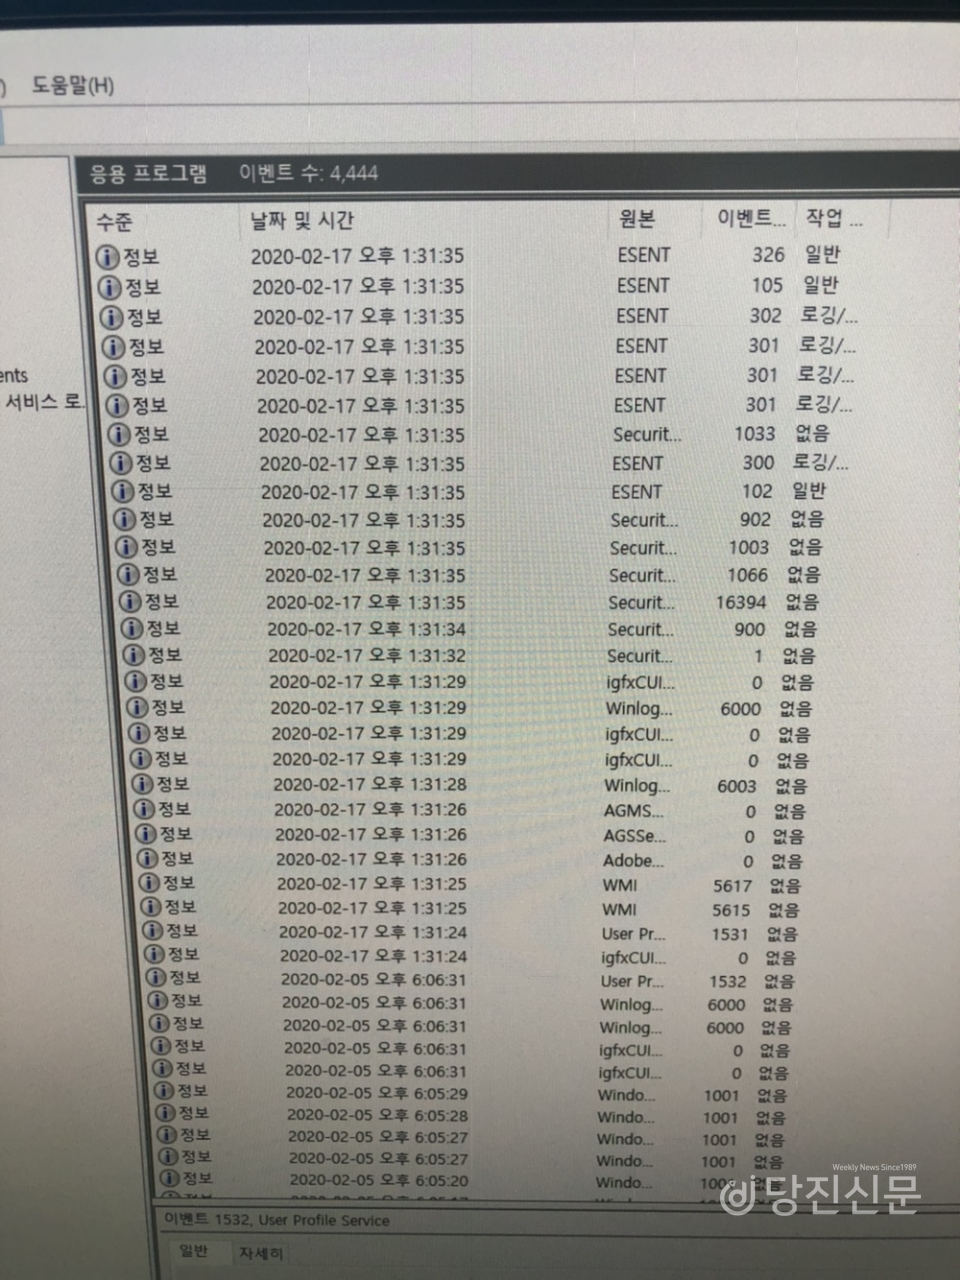 세종사무소 컴퓨터 부팅 기록. 지난해 9월 이후 조상연 시의원이 방문한 6월 4일까지 컴퓨터는 사용되지 않았다.